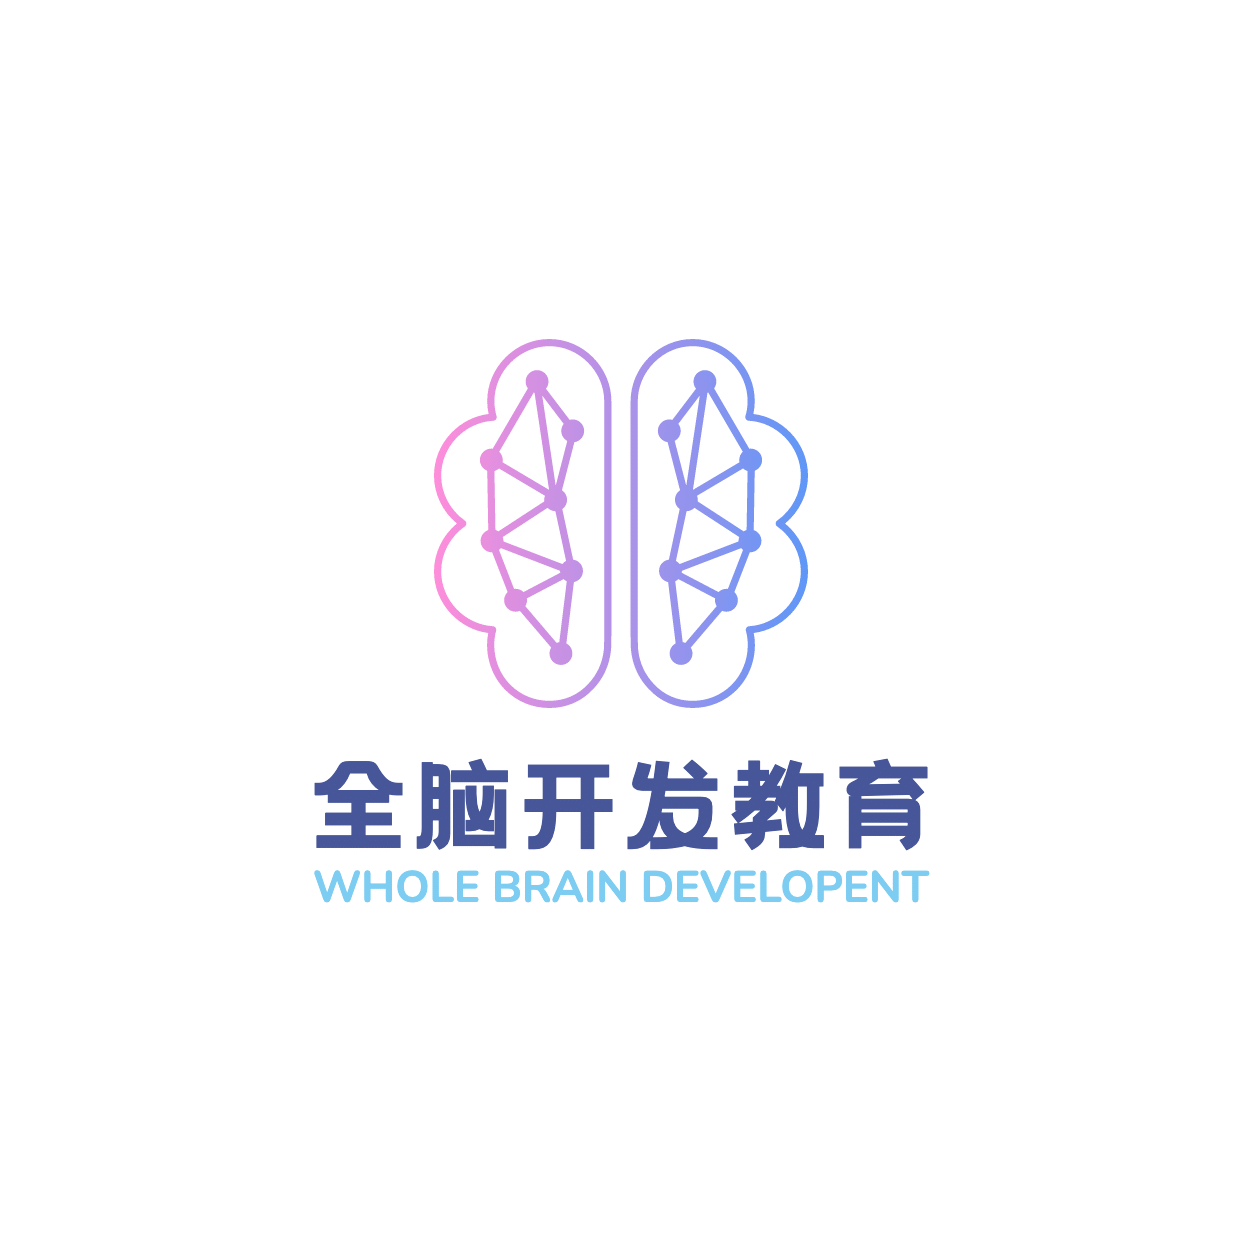 素质教育全脑开发头像logo预览效果